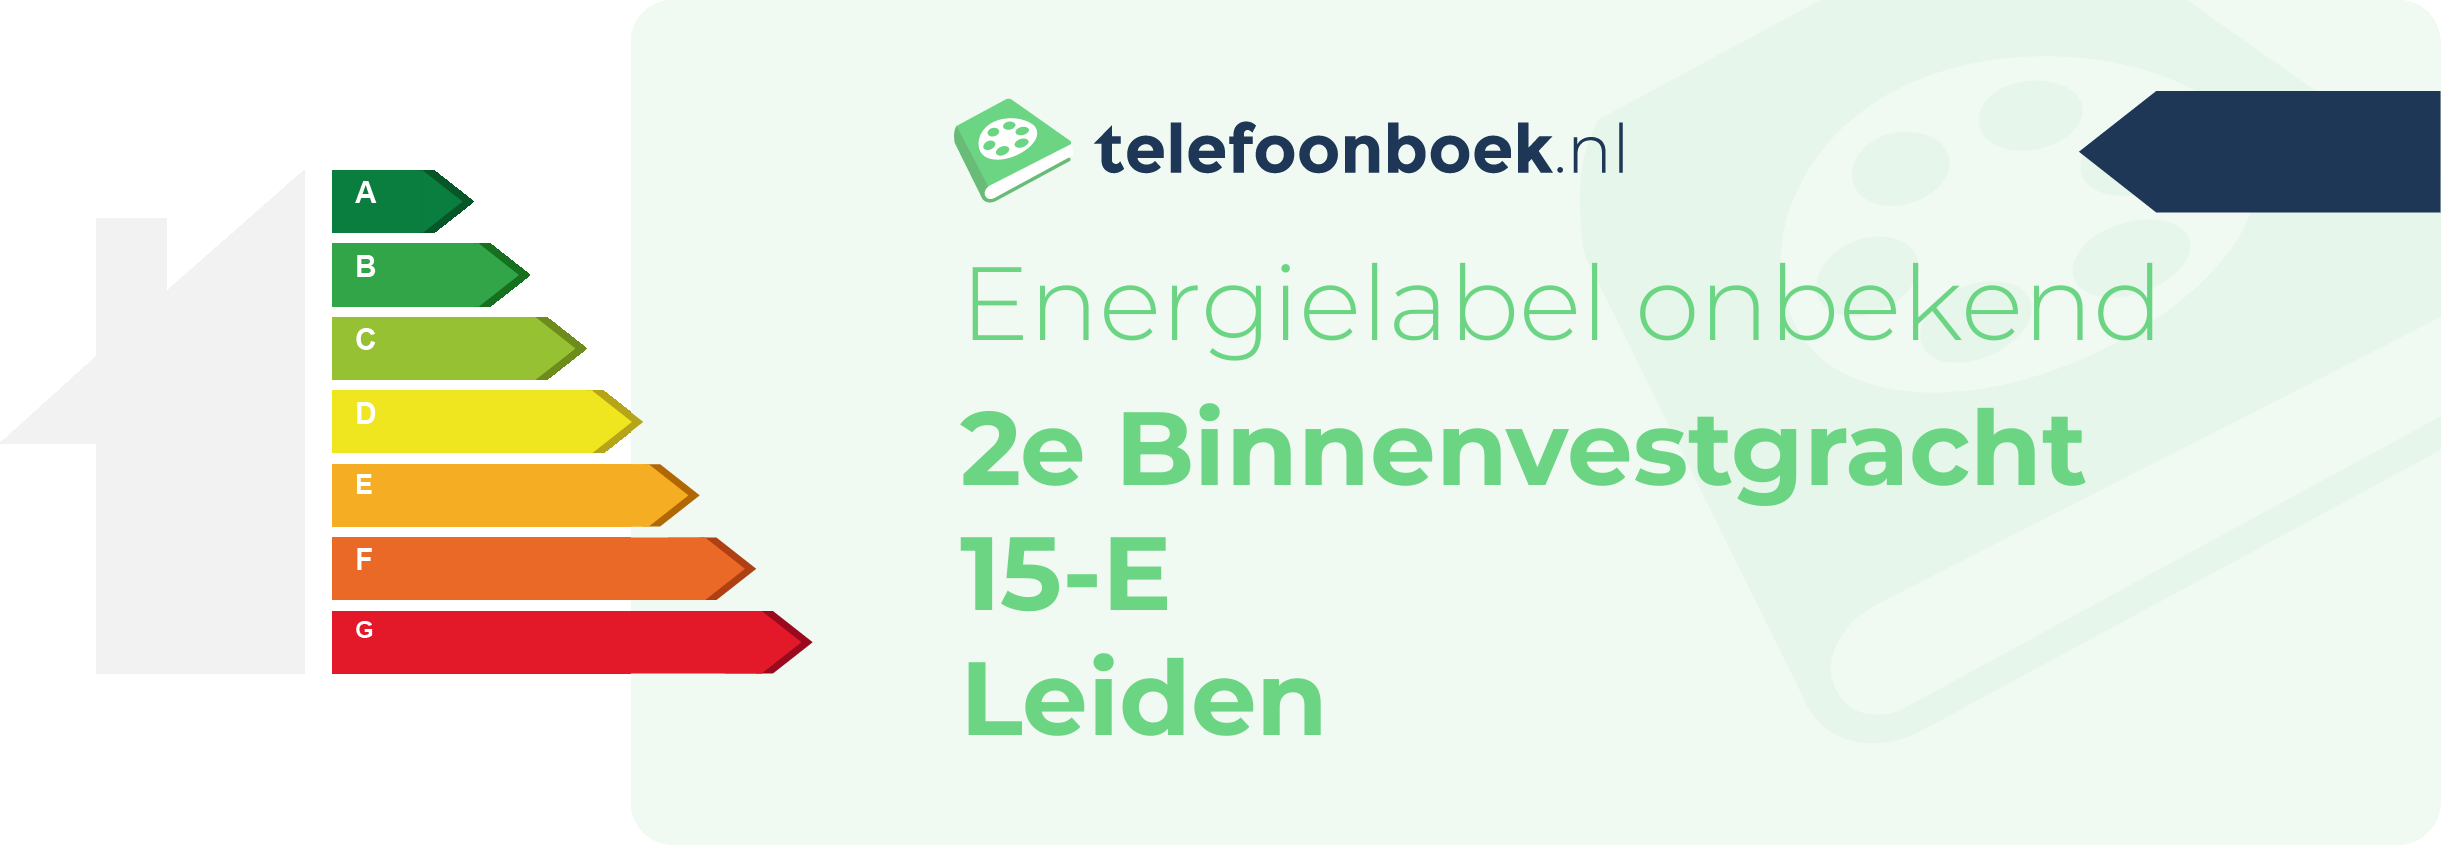 Energielabel 2e Binnenvestgracht 15-E Leiden